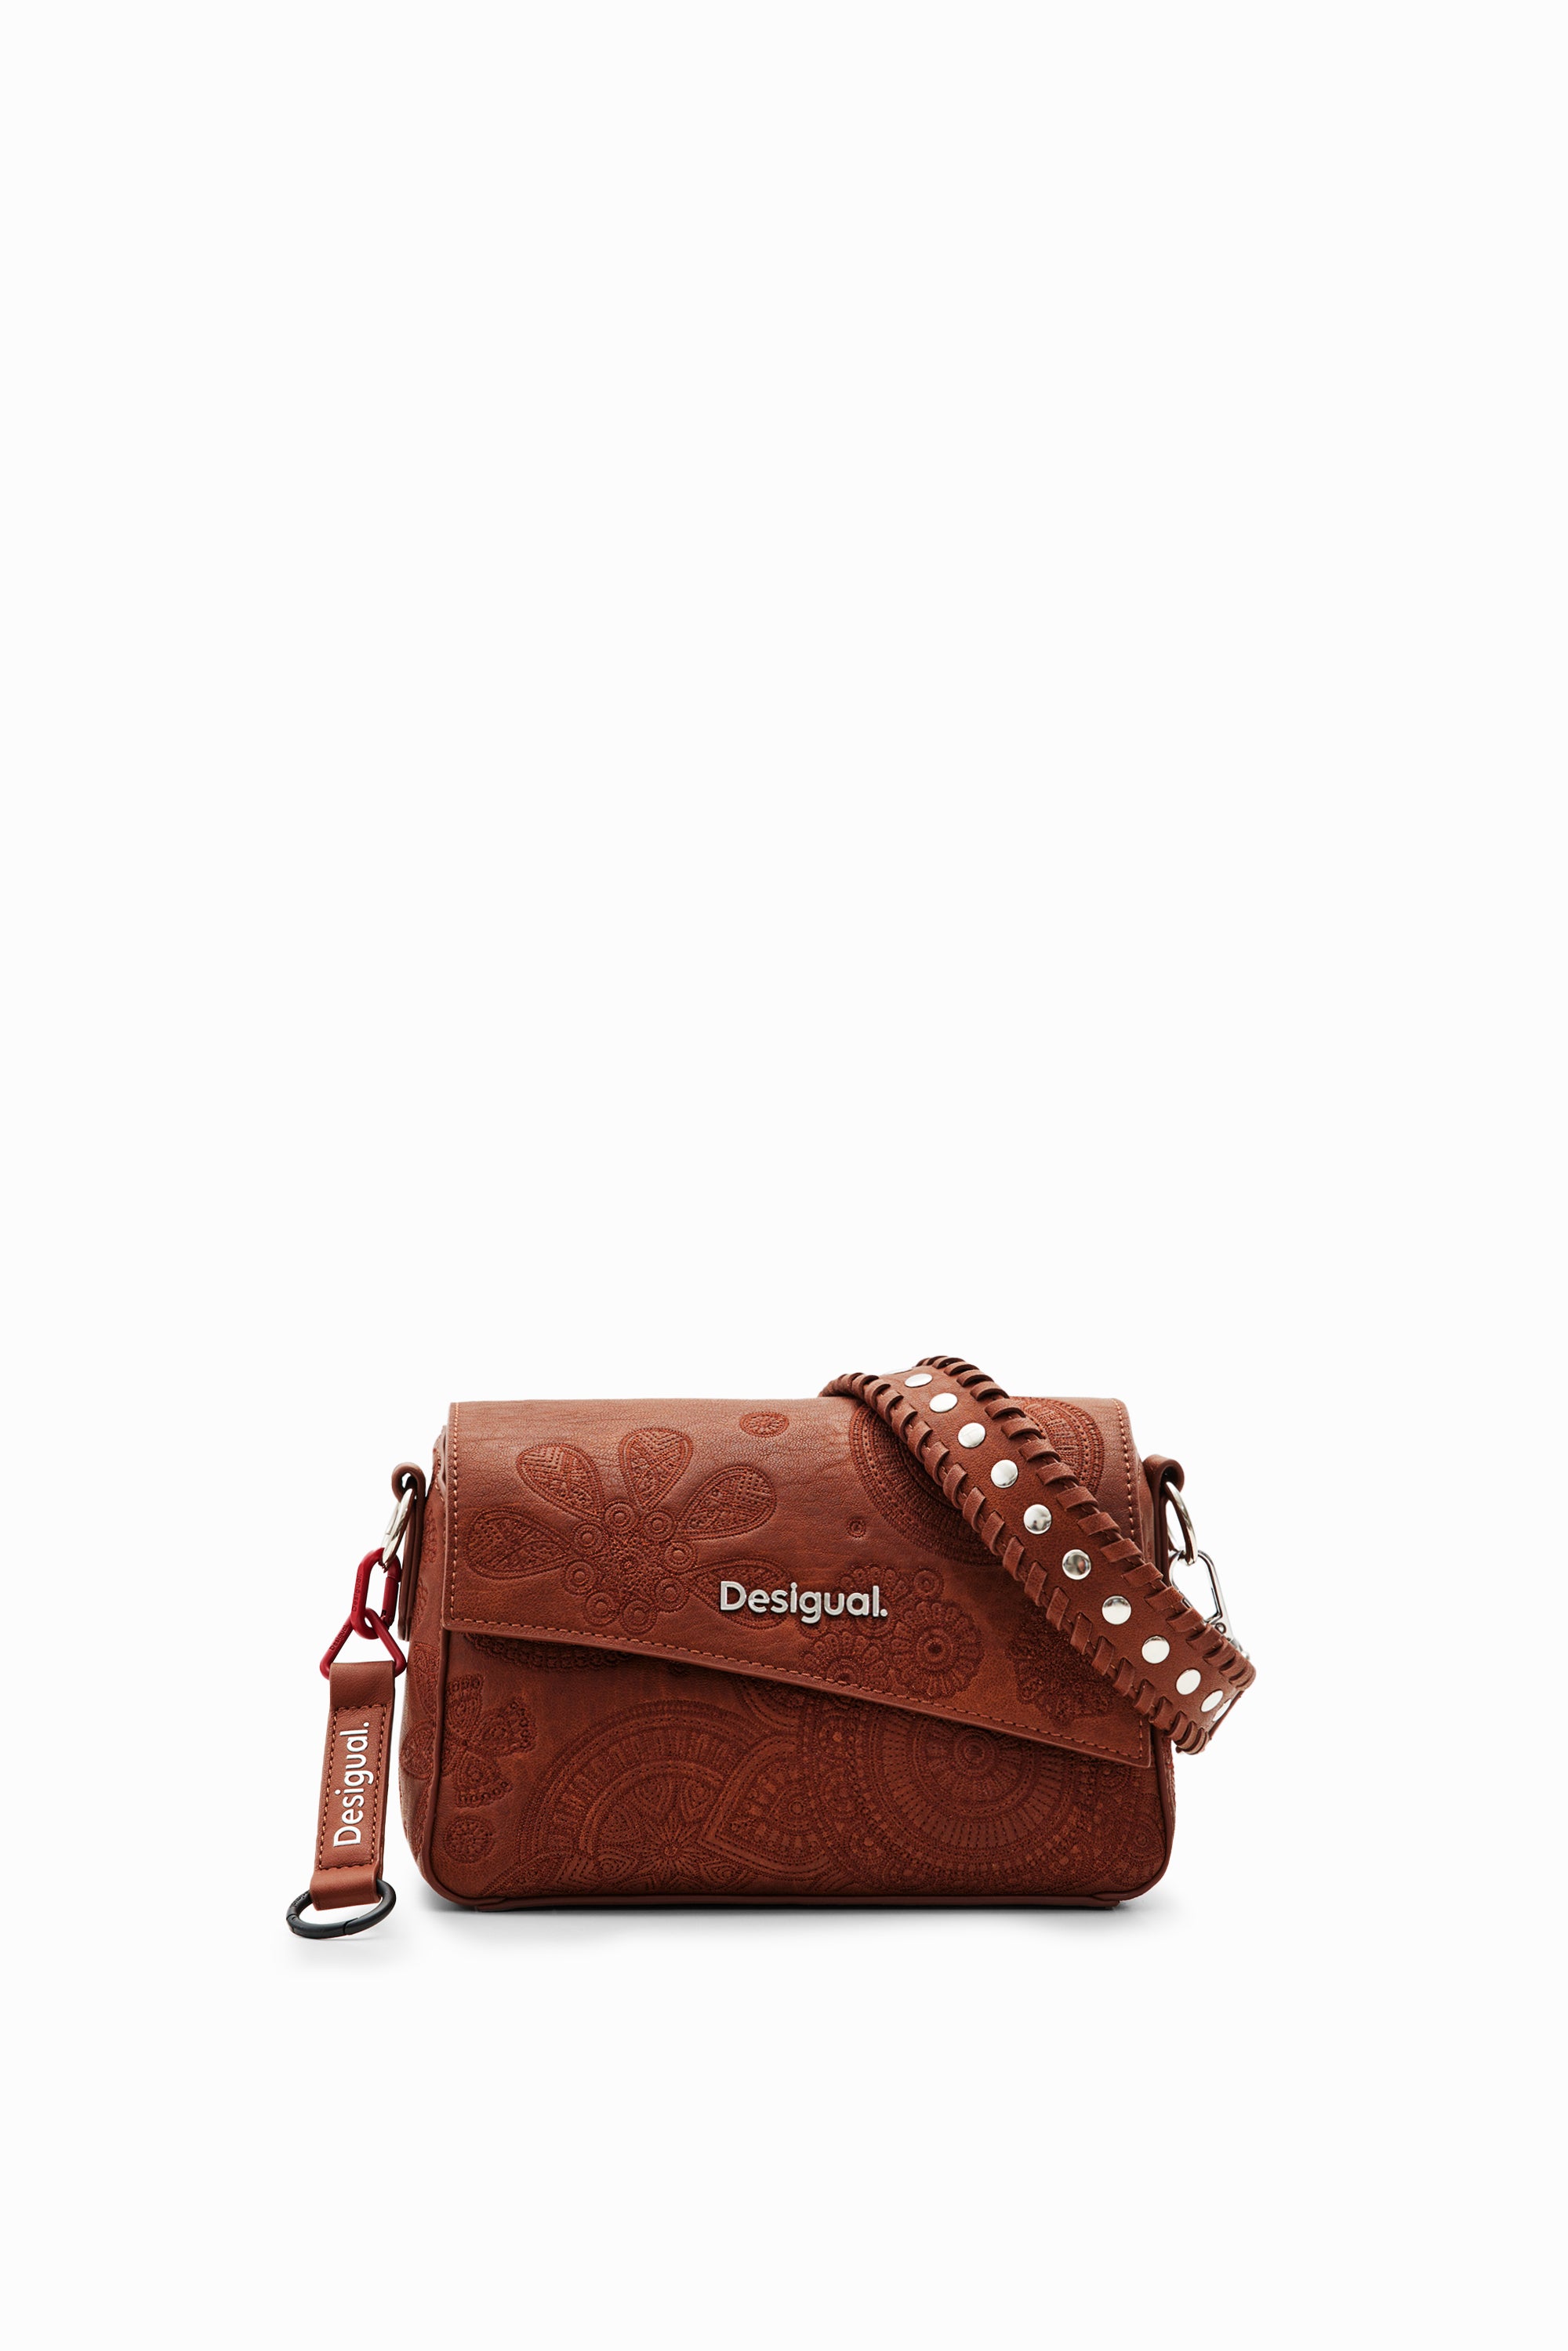 Desigual 24SAXP26 Brown Shoulder Bag